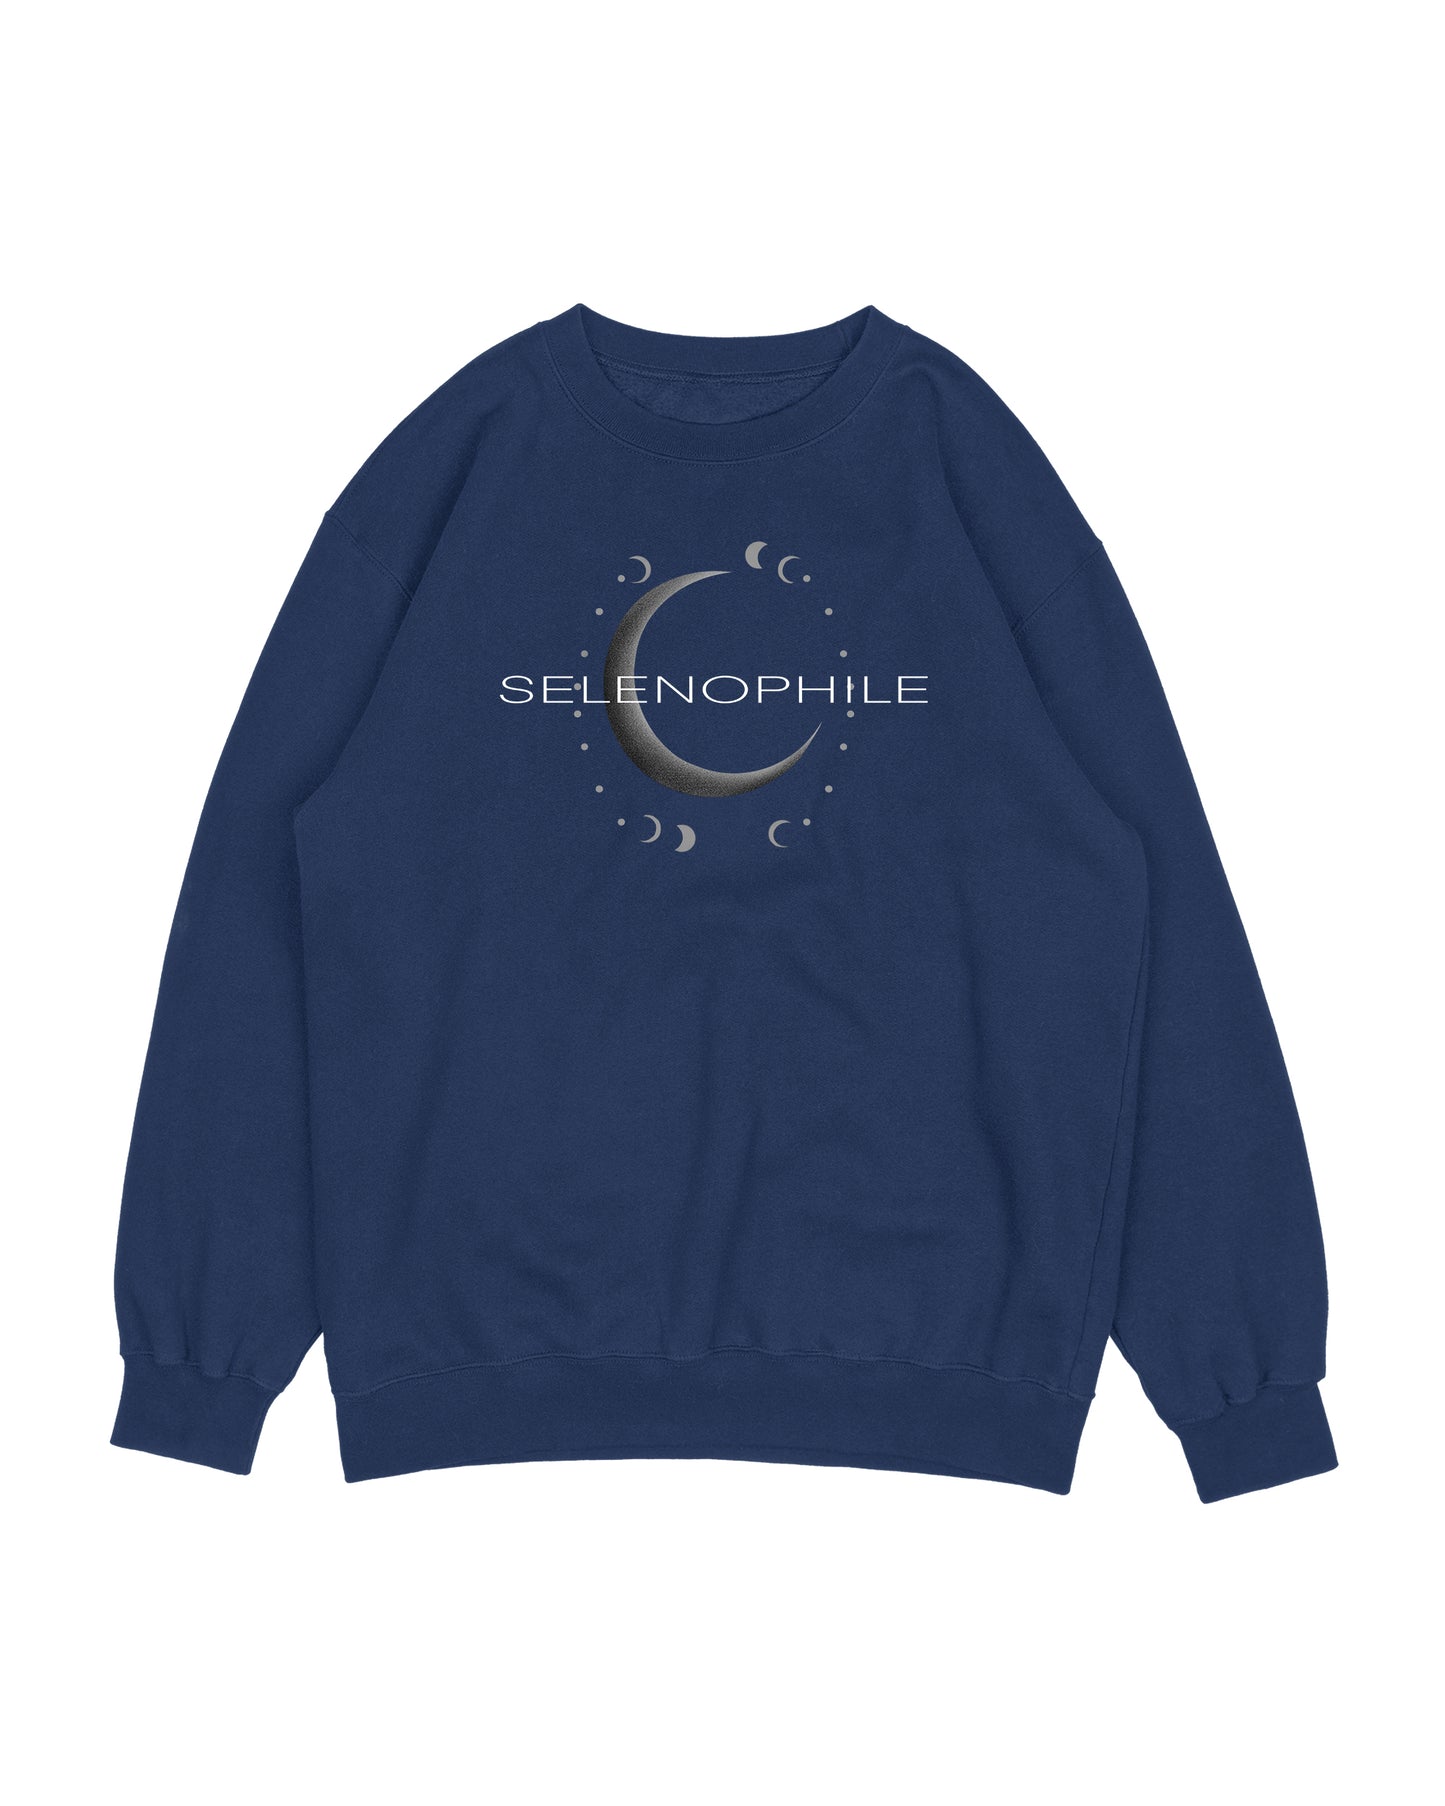 Selenophile Sweatshirt